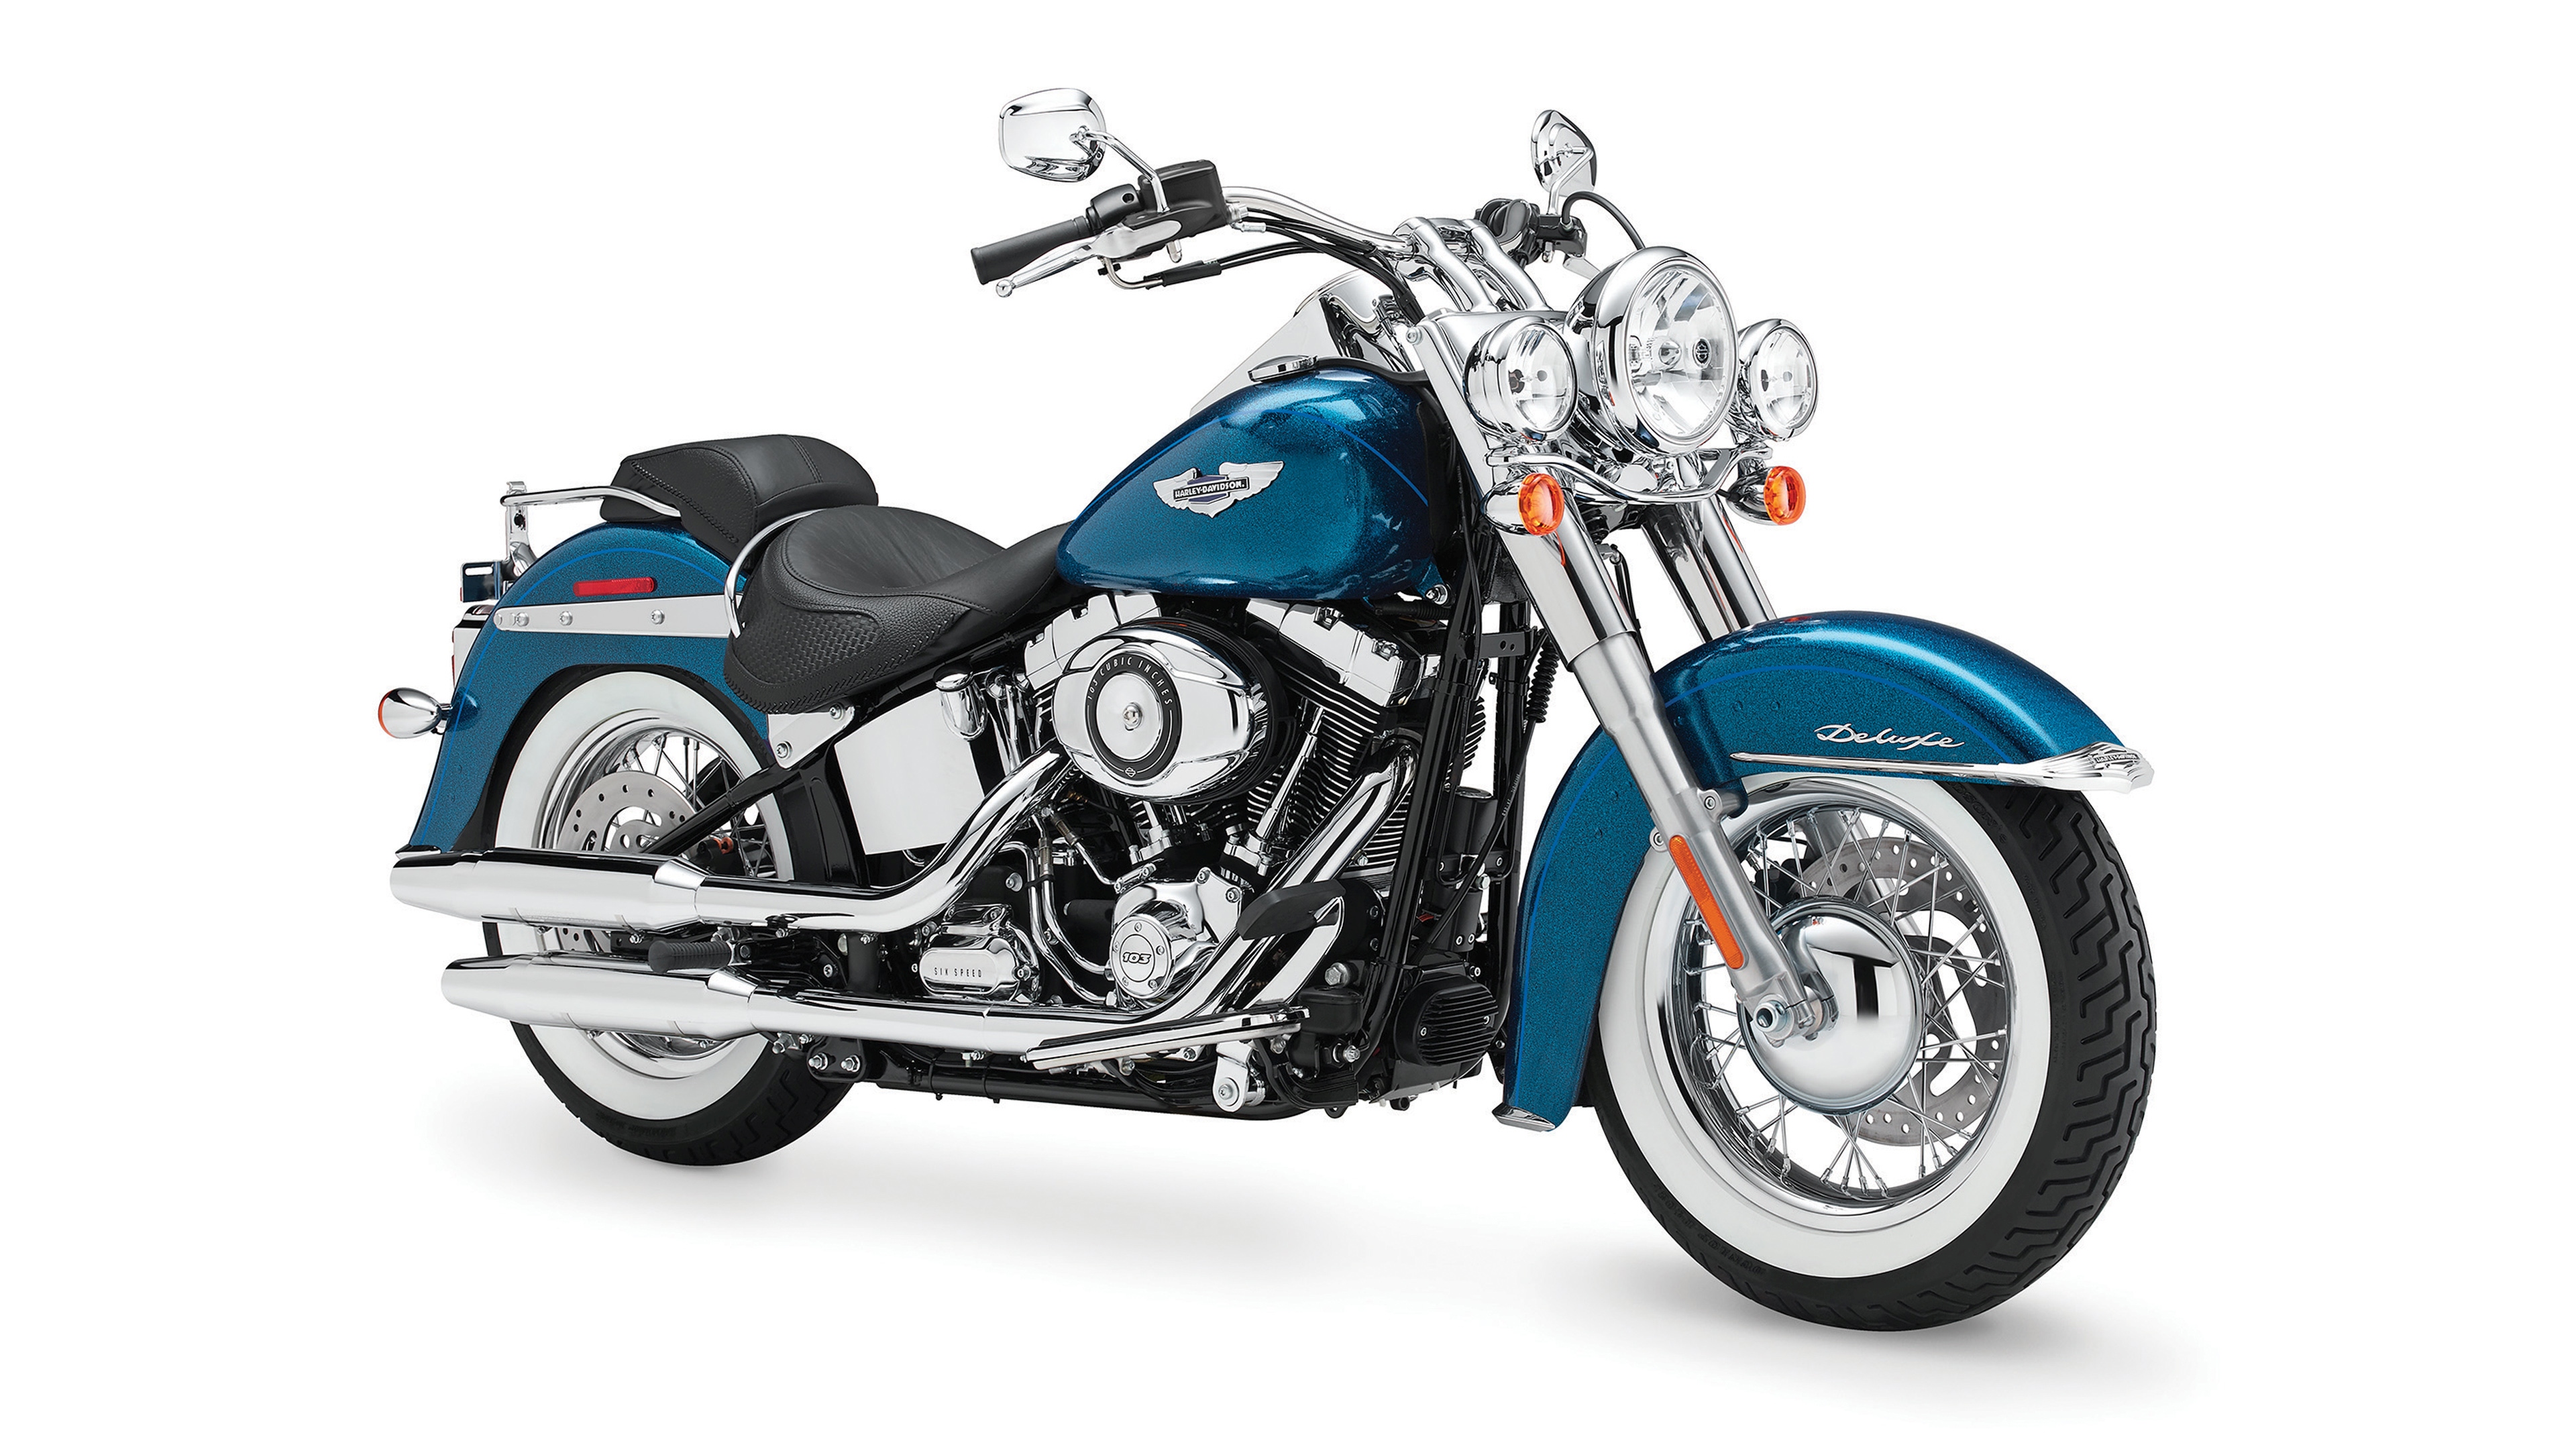 Télécharger des fonds d'écran Harley Davidson Softail Deluxe HD